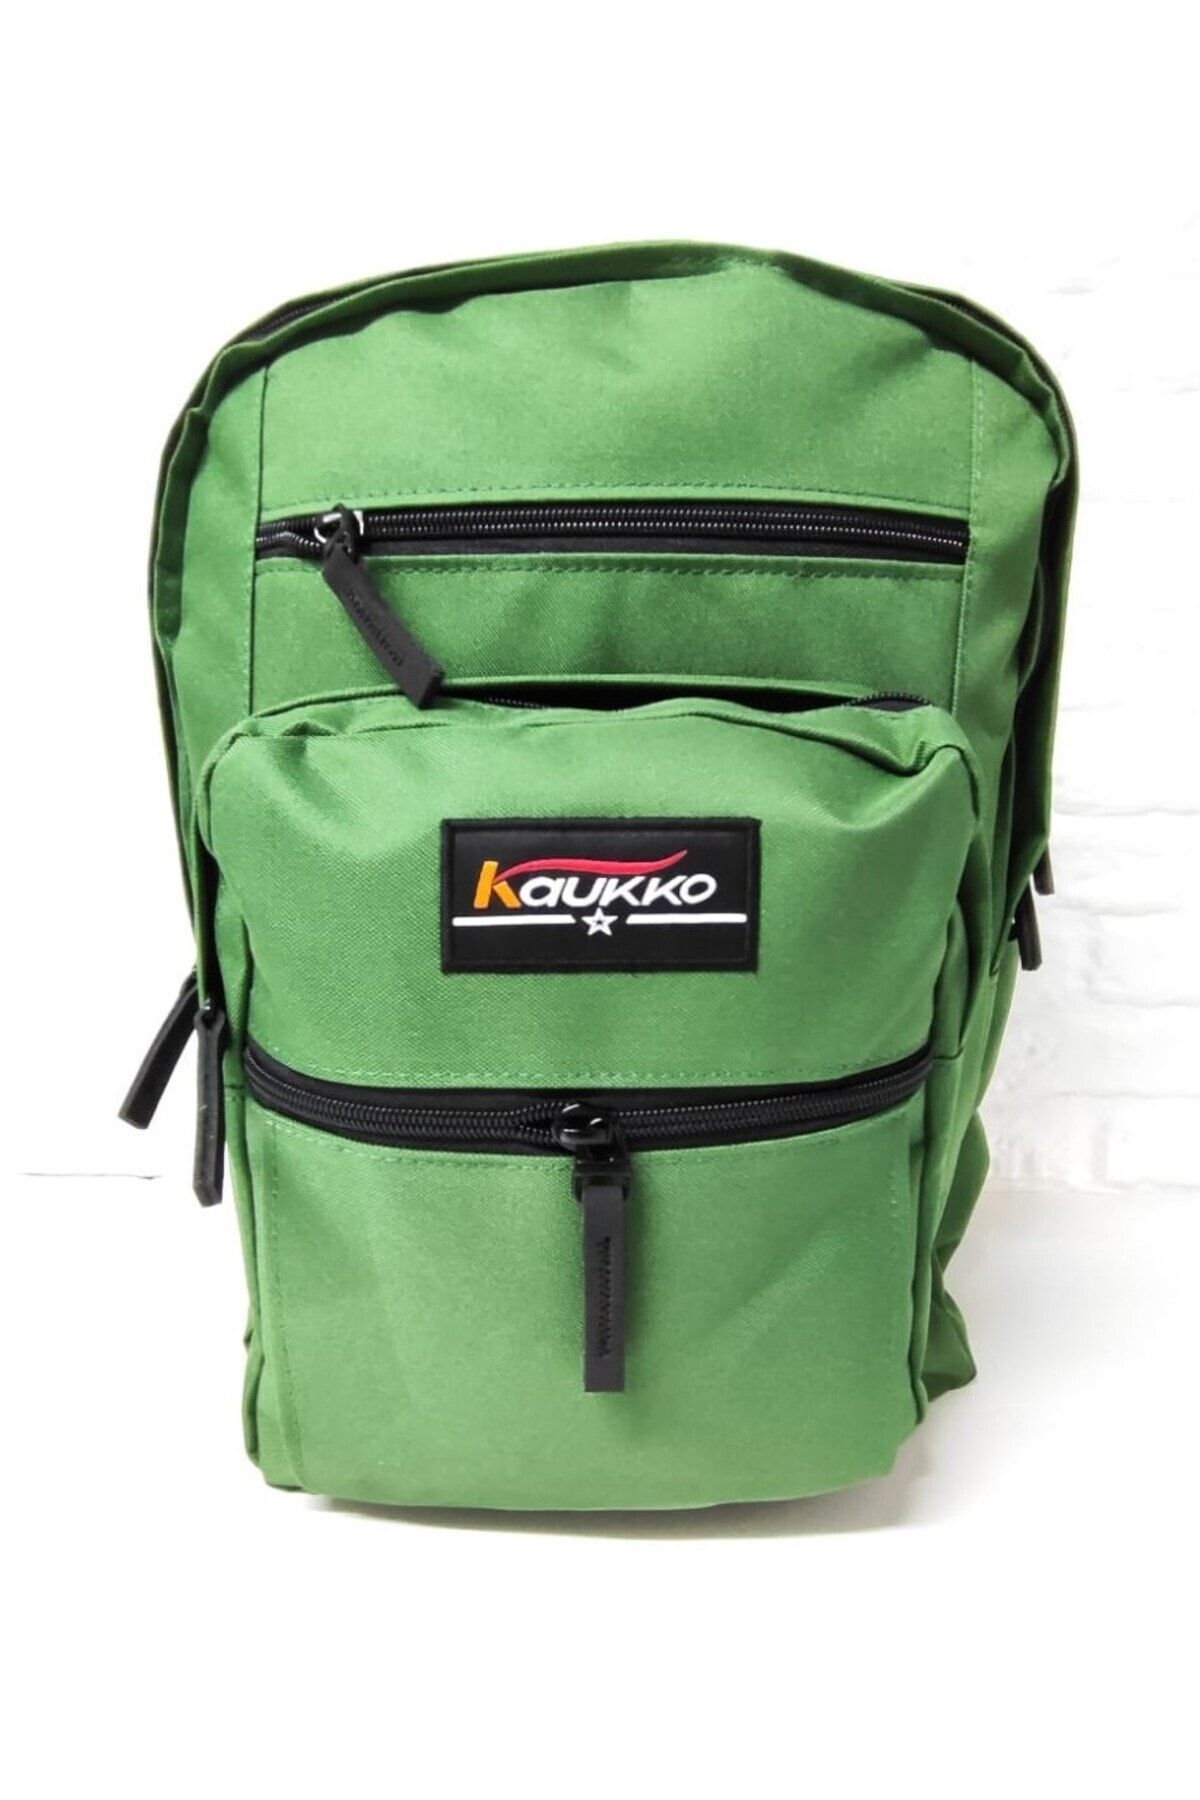 Kaukko Full Pocket Yeşil Renk Sırt Çantası Yerli Üretim (1 Yıl Garanti)